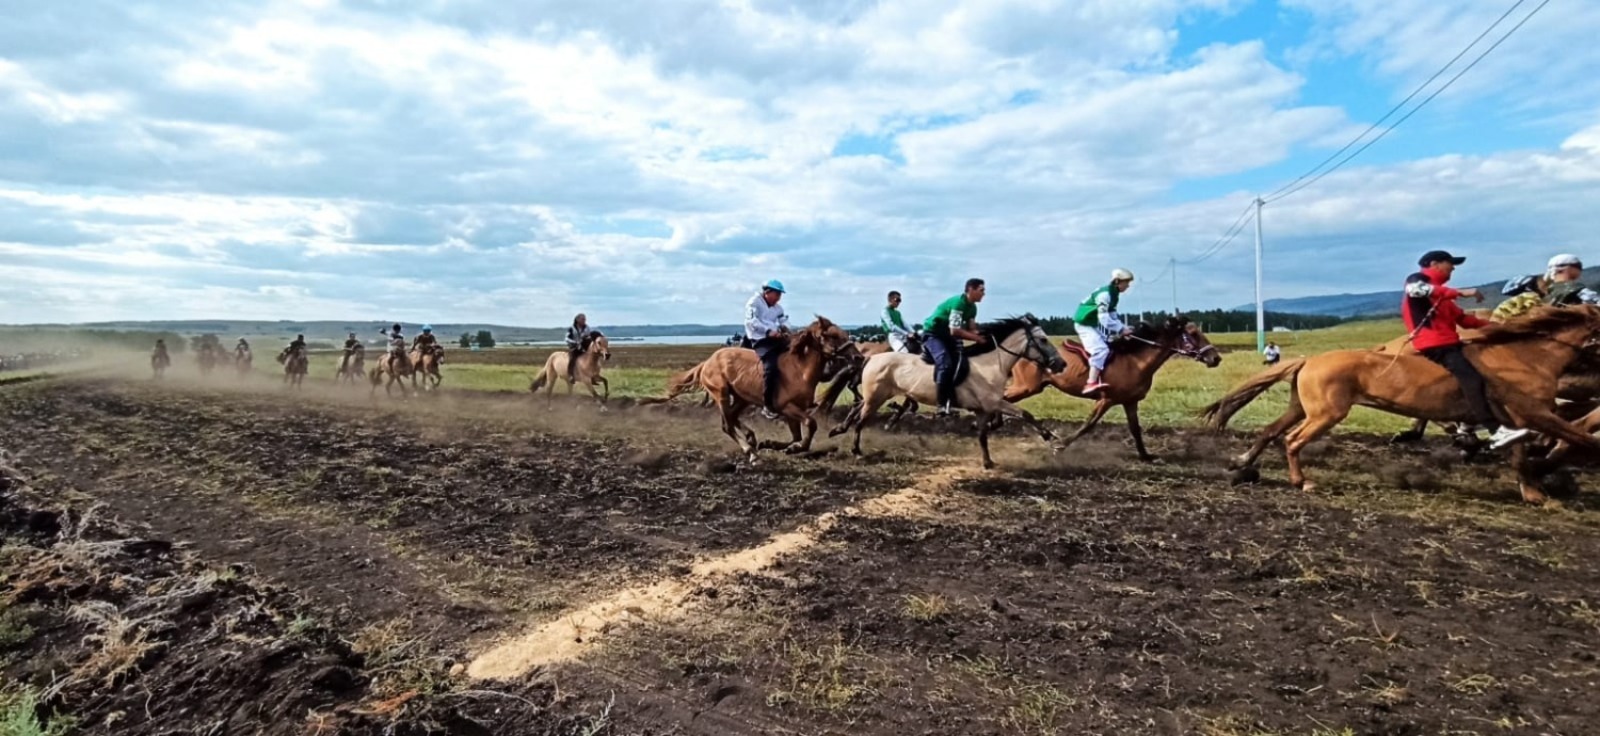 На фестивале башкирской лошади сегодня прошли игры и скачки